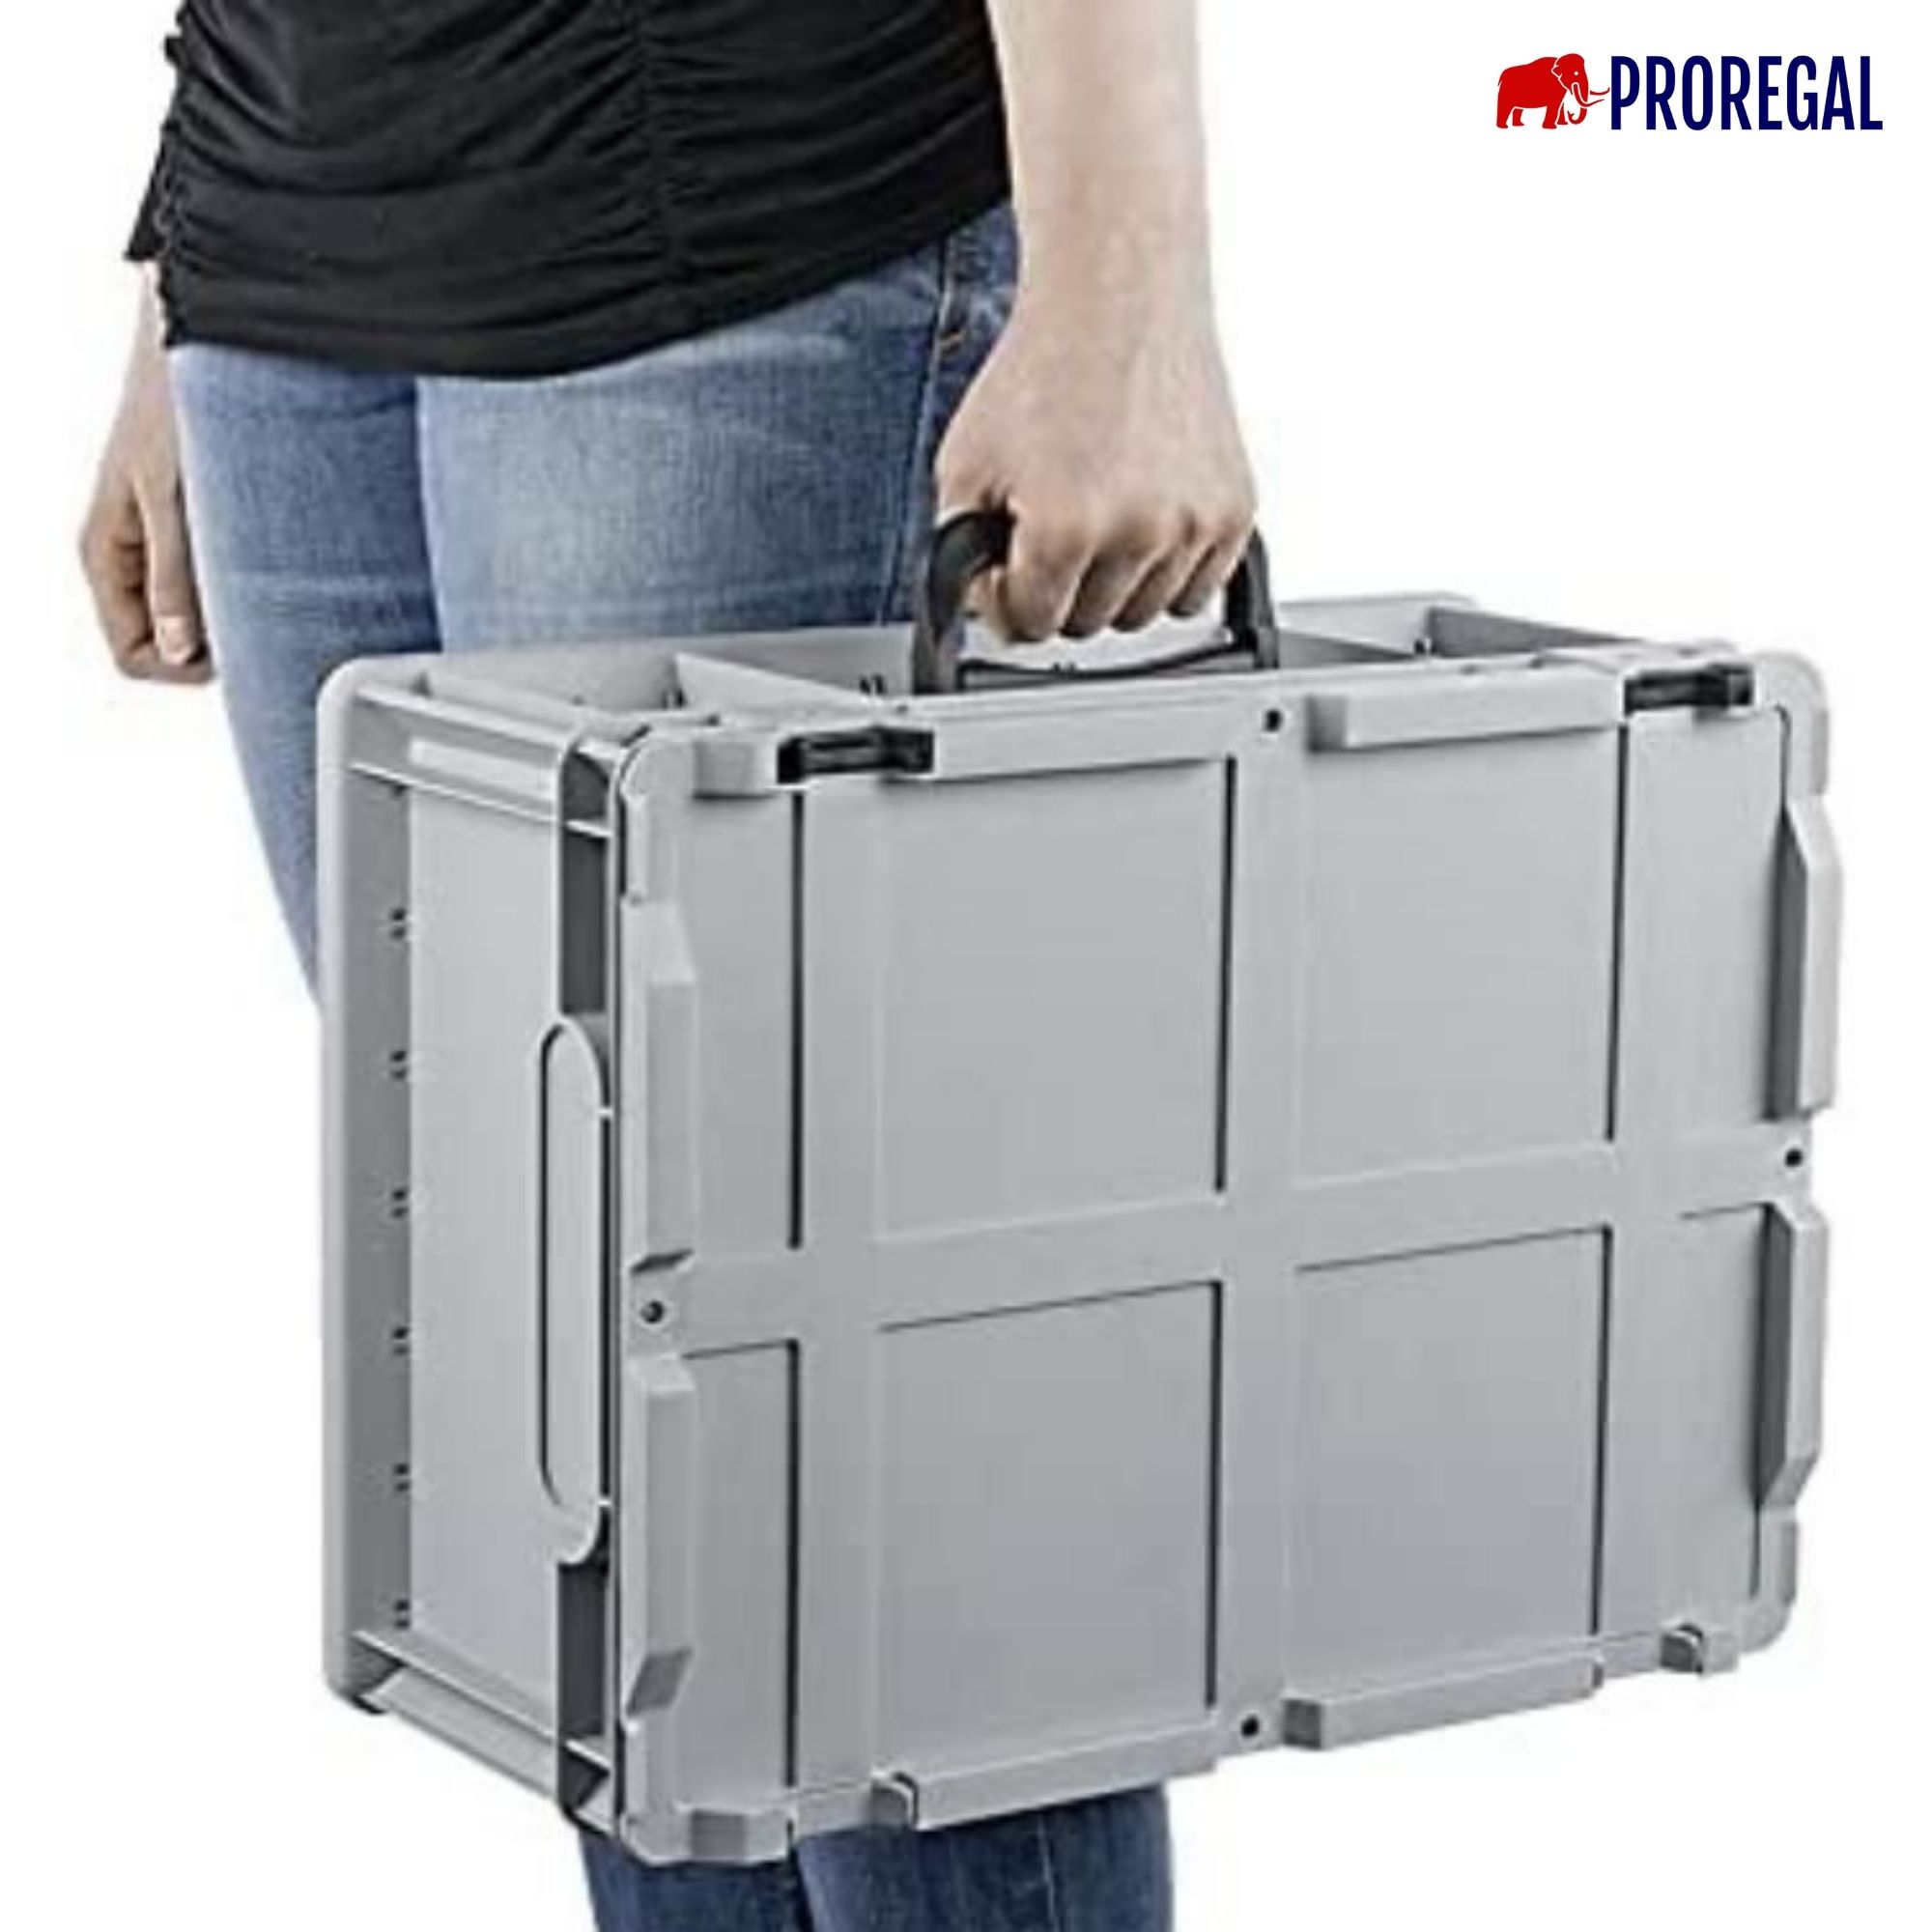 Eurobox NextGen Portable mit Rasterschaumstoff & Schaumstoffeinlage | HxBxT 23,5x40x60cm | 44 Liter | Eurobehälter, Transportbox, Transportbehälter, Stapelbehälter